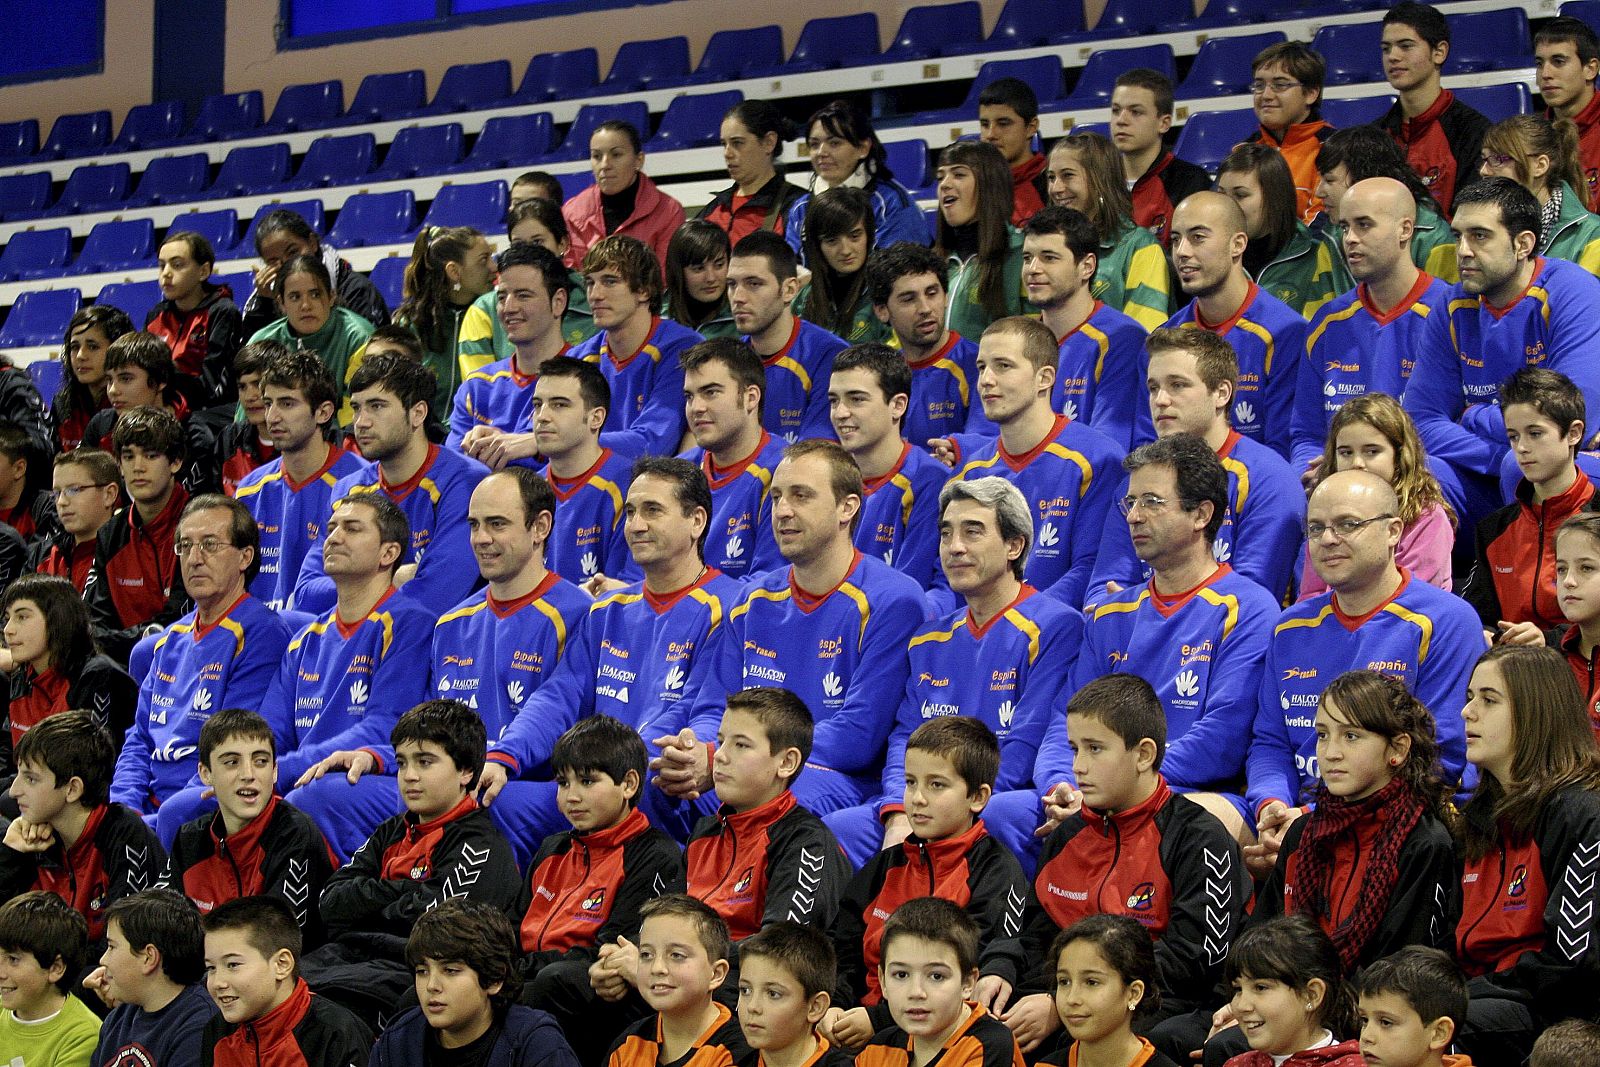 La selección española de balonmano posa para los medios junto a las categorías inferiores del club baloncesto ciudad de Algeciras.